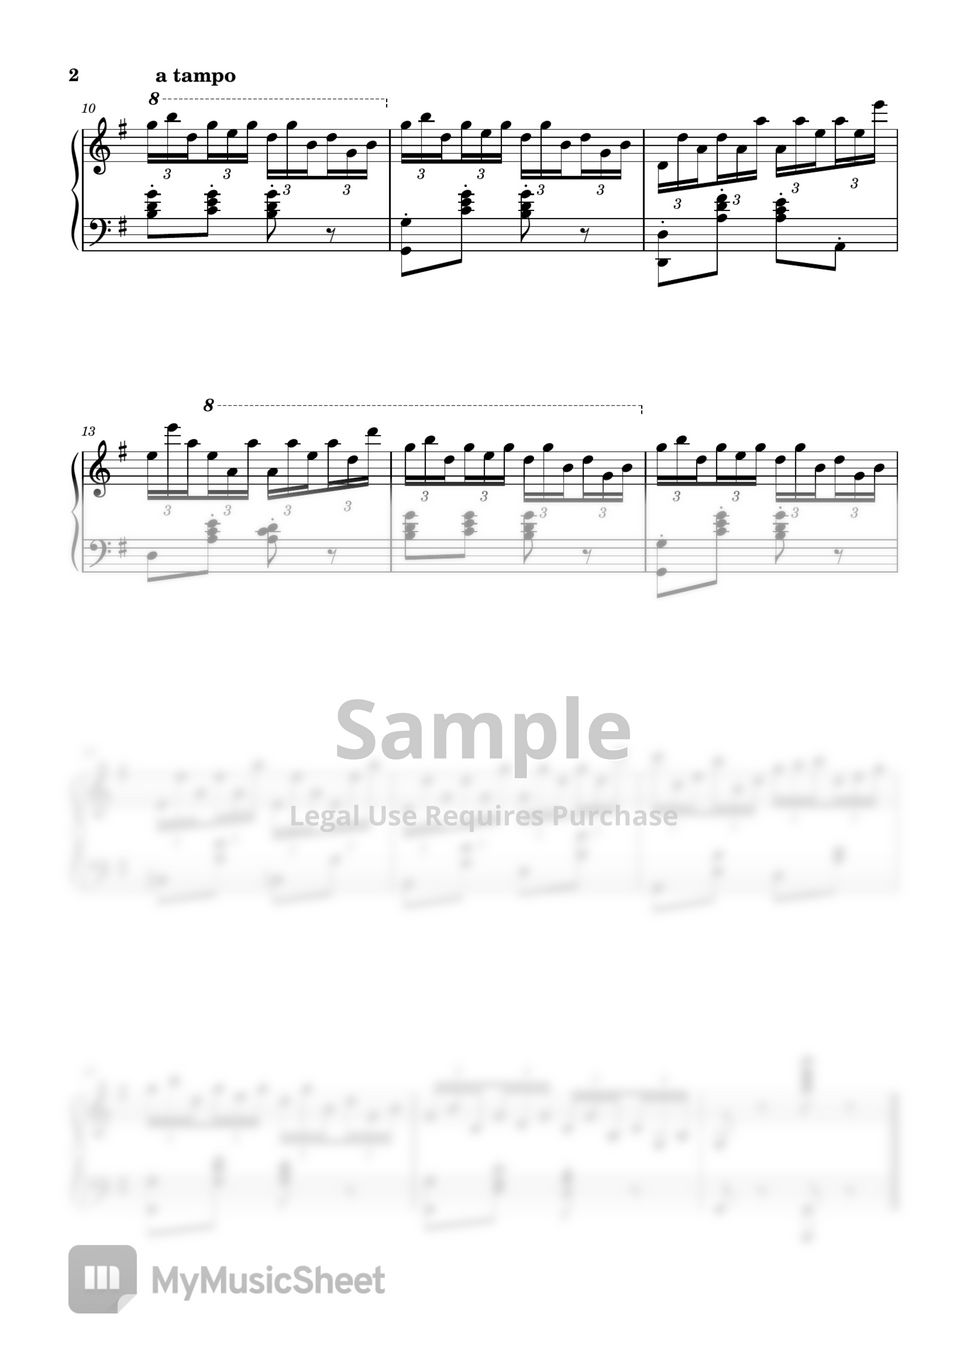 말할 수 없는 비밀 OST - 말할 수 없는 비밀 OST (흑건 백건) (쉬운악보, 계이름악보) by My Uk Piano